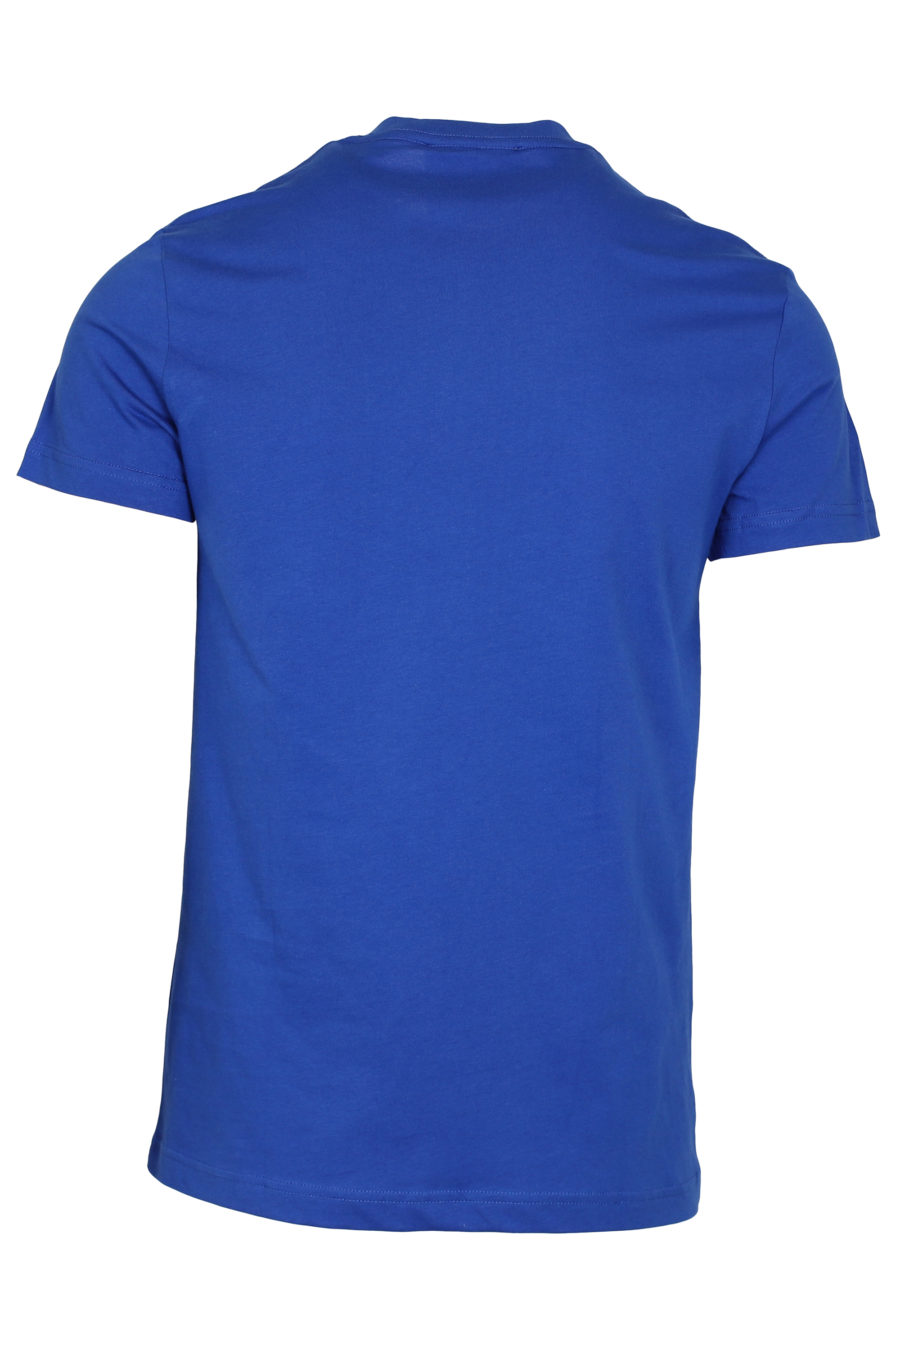 Camiseta azul con logotipo pequeño - IMG 9354